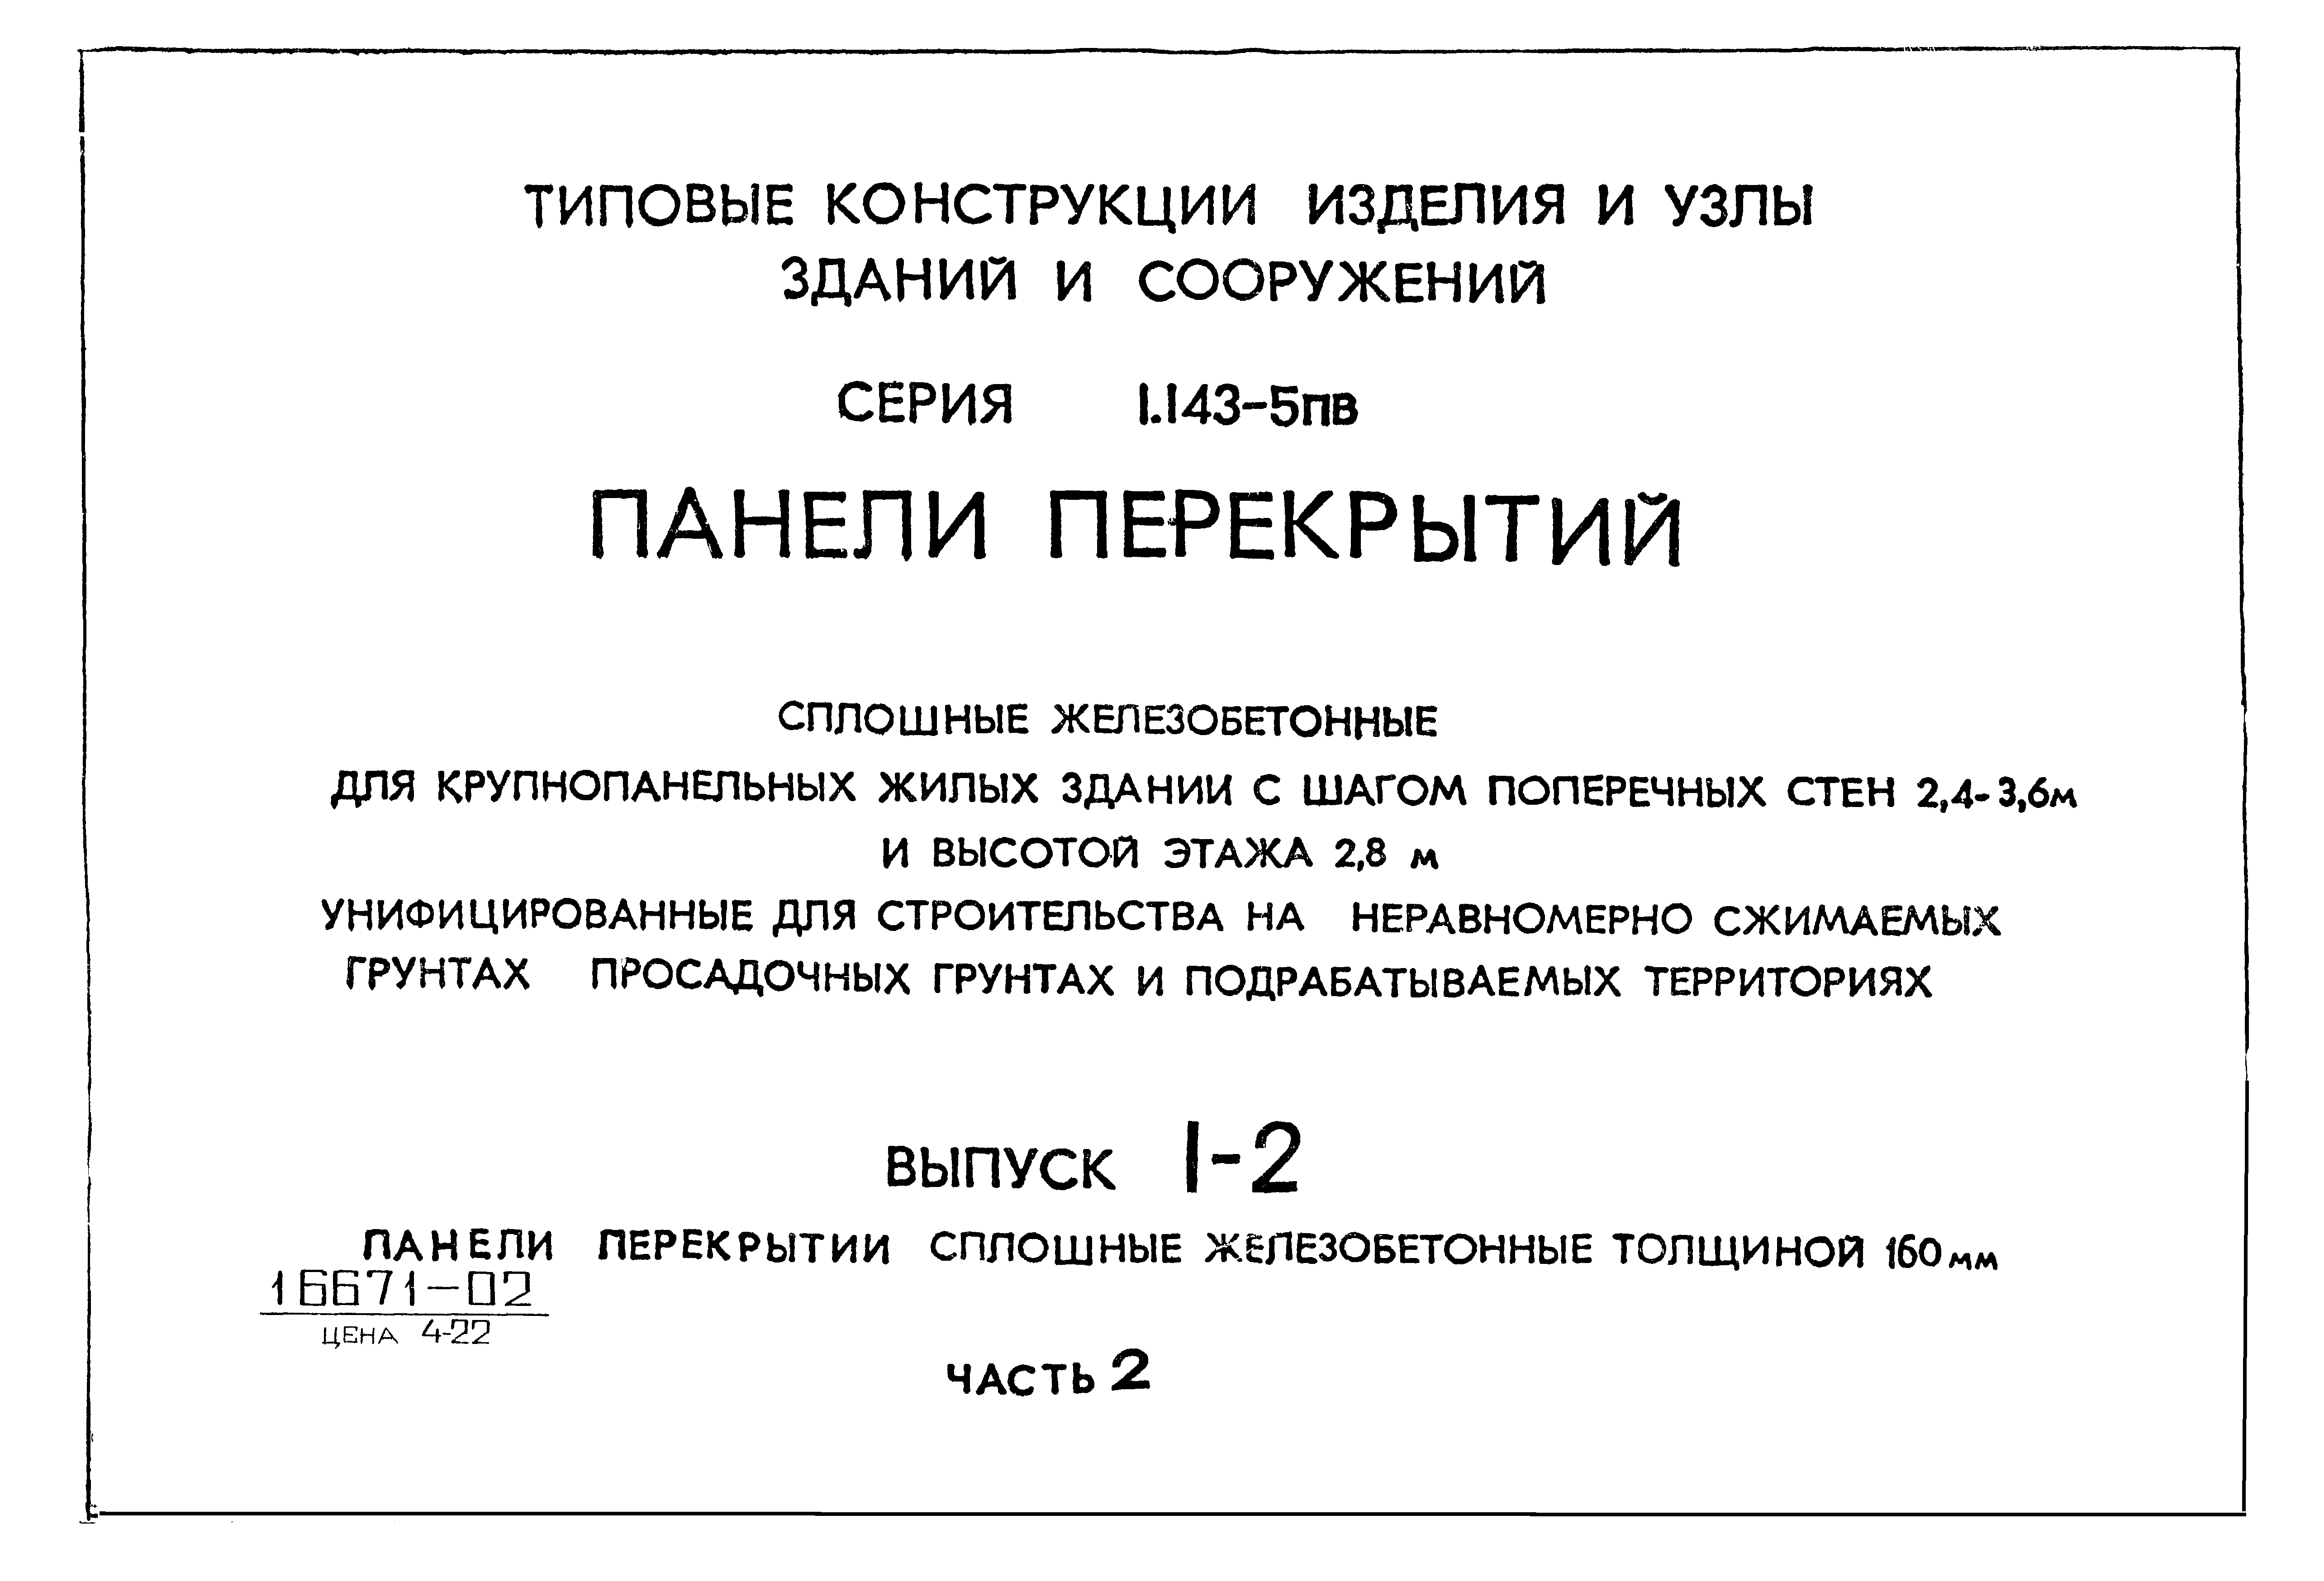 Серия 1.143-5пв